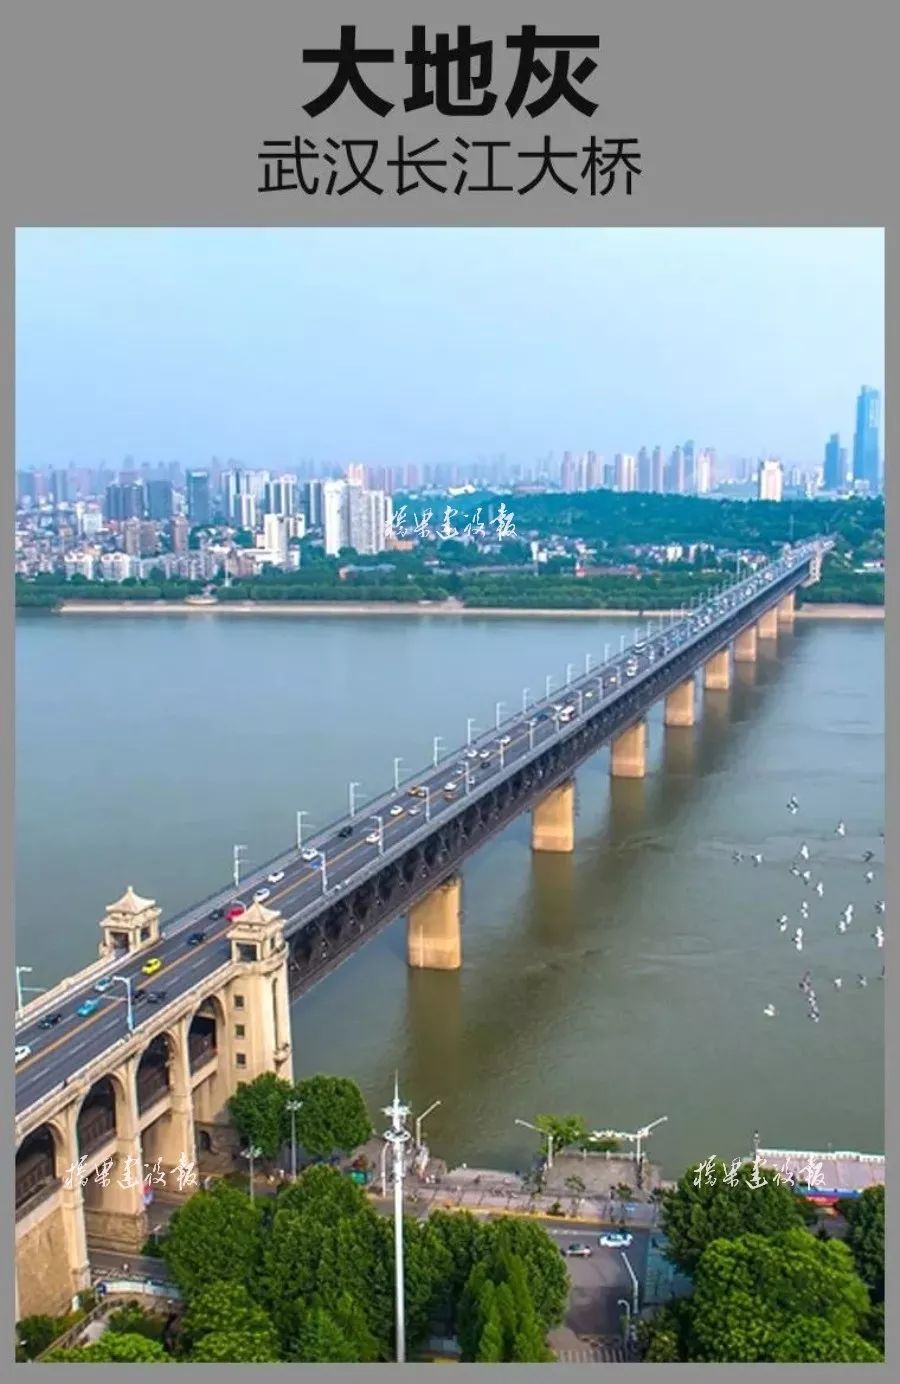 02 武汉长江大桥全长1670米,主桥长1156米,上层桥面为双向4车